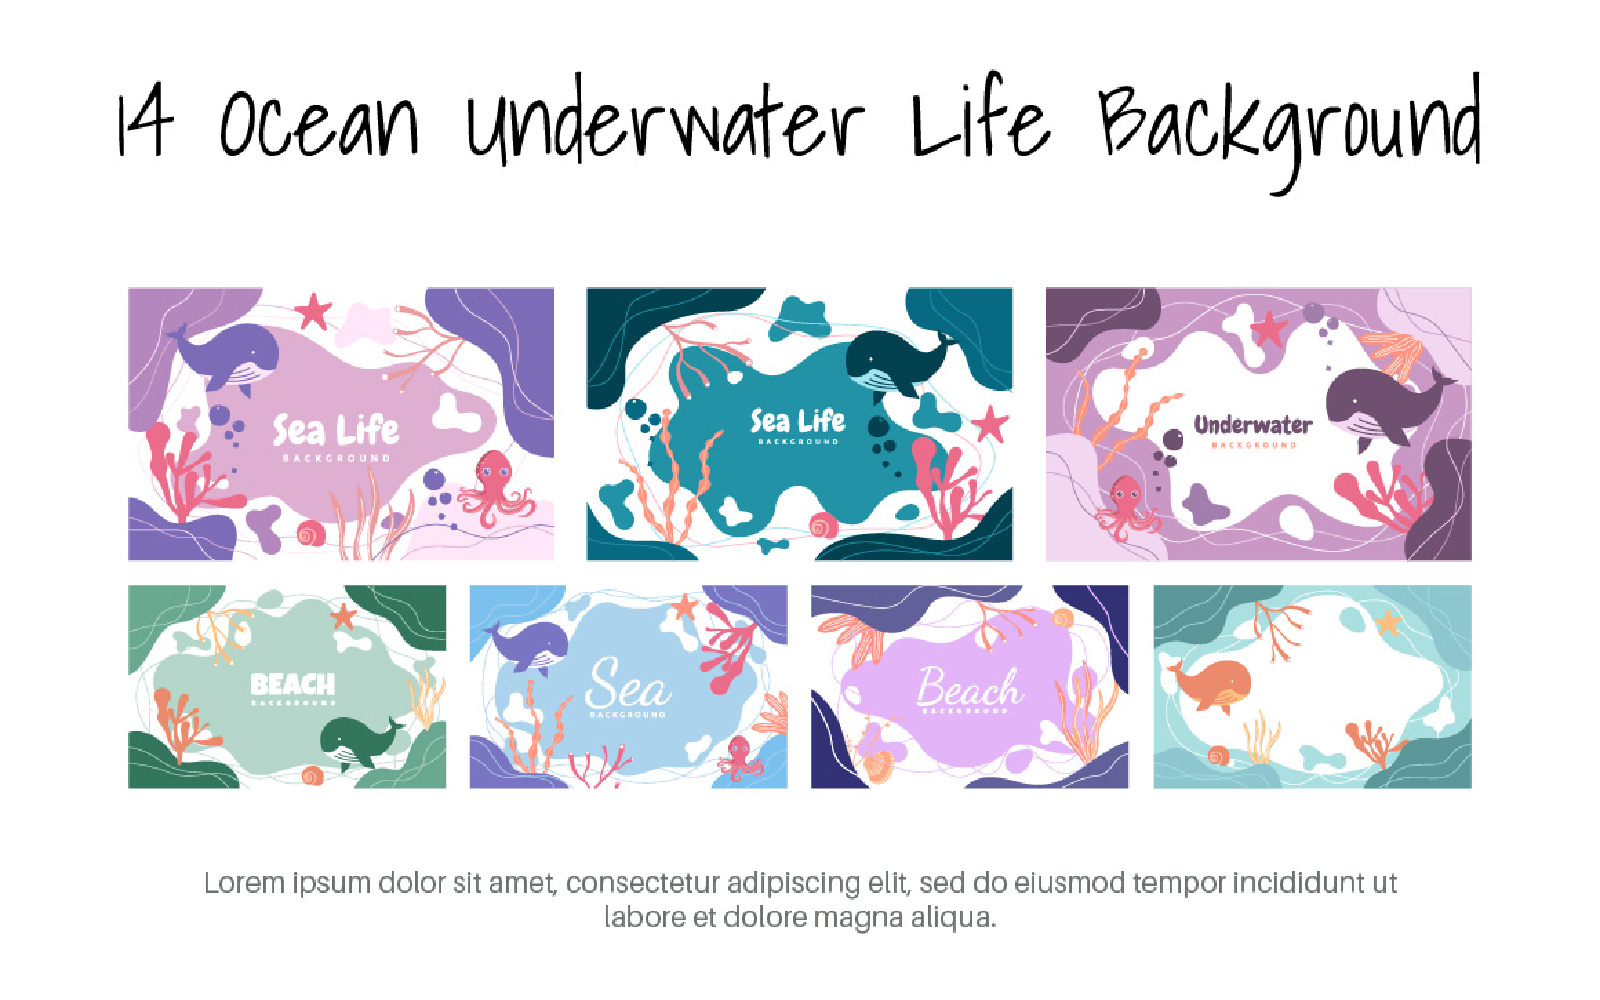 14 Ocean Underwater Life Background